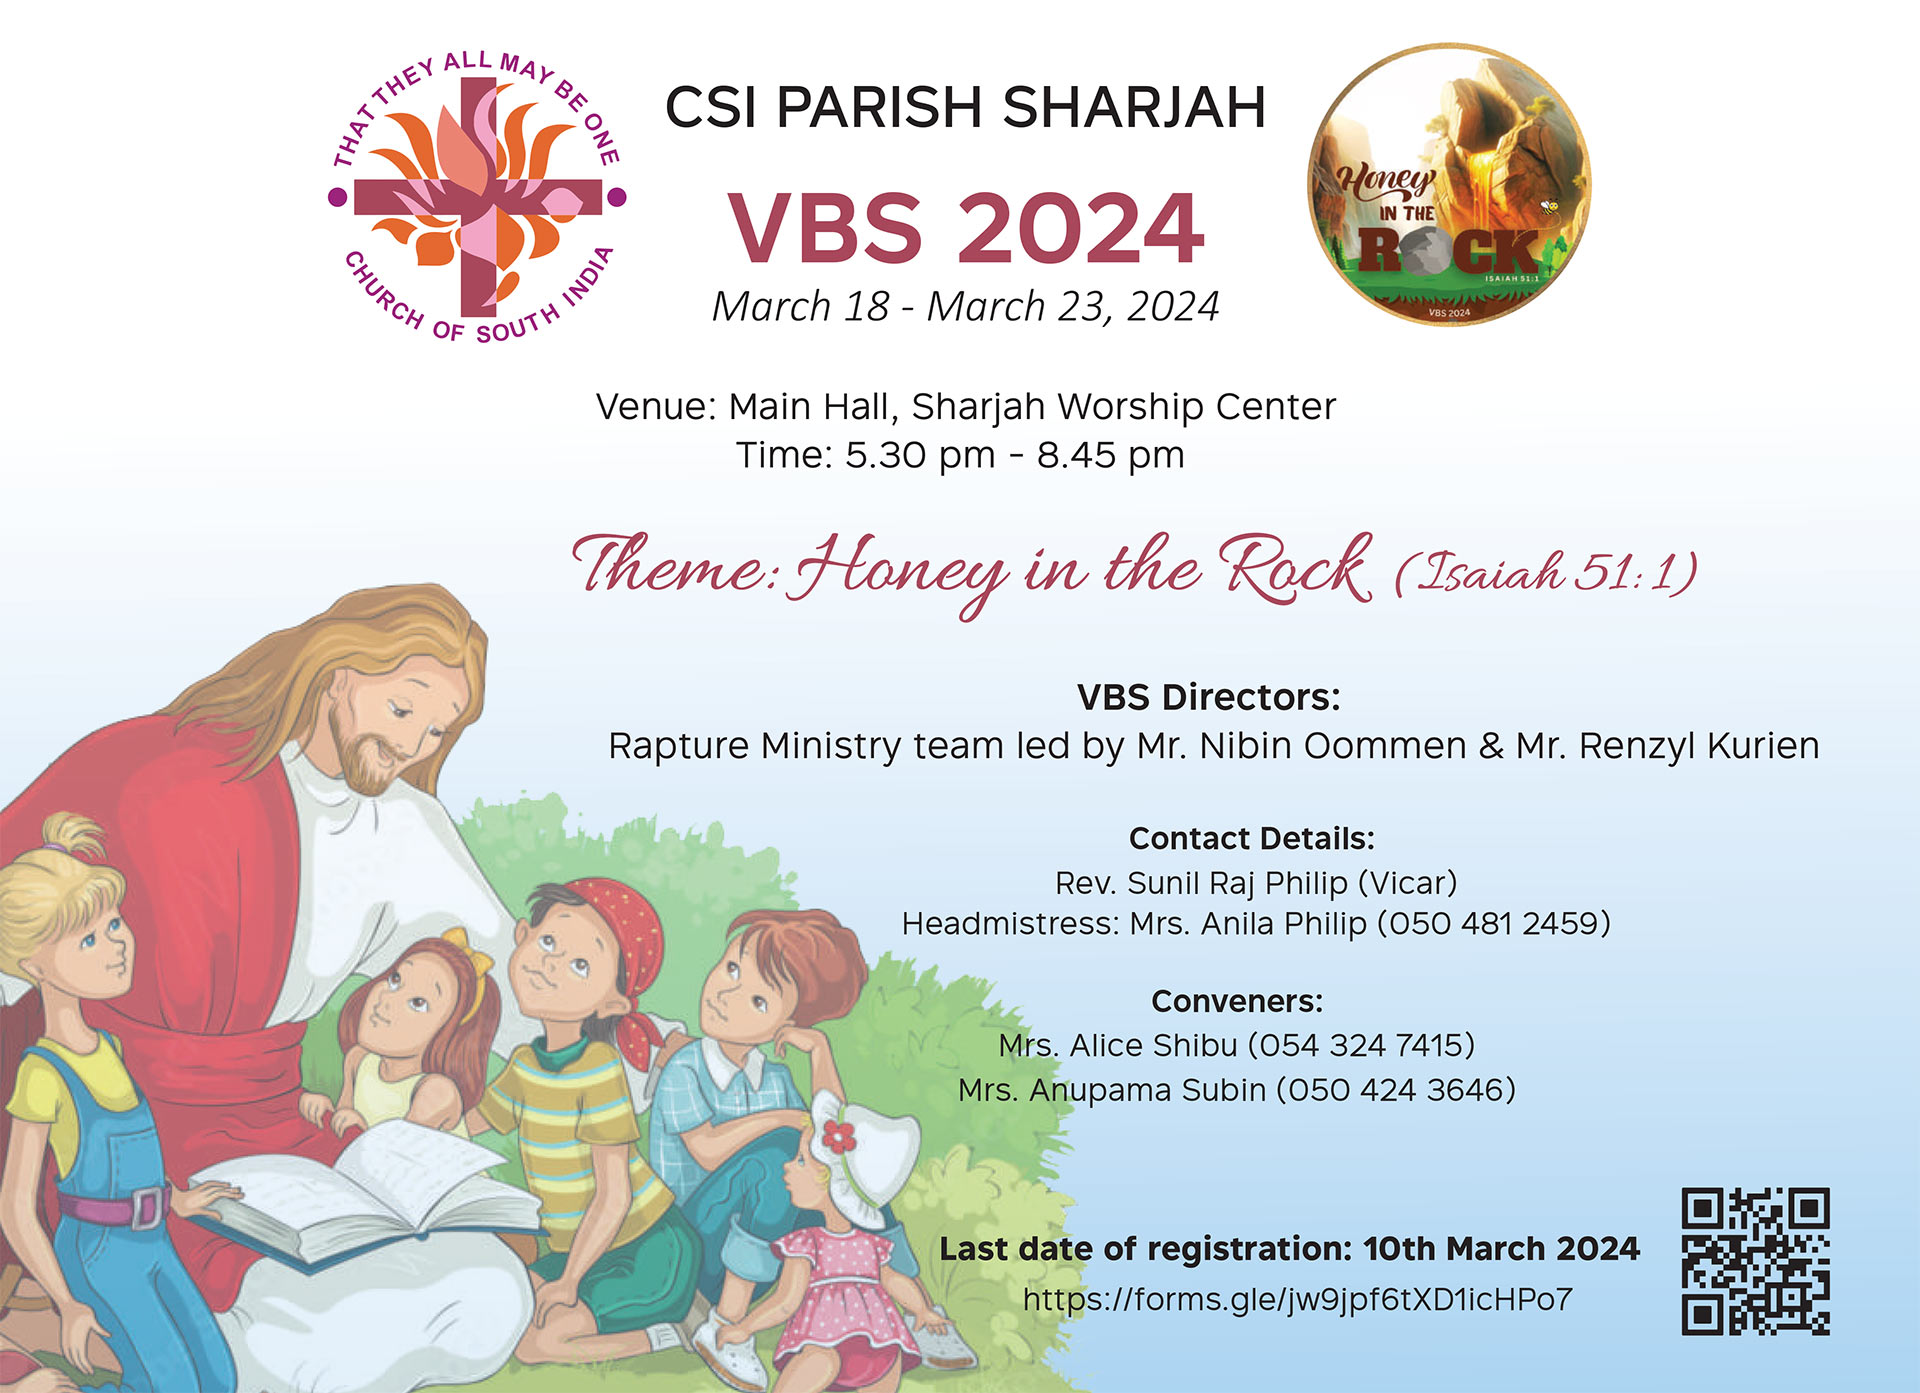 VBS 2024 – CSI Parish Sharjah